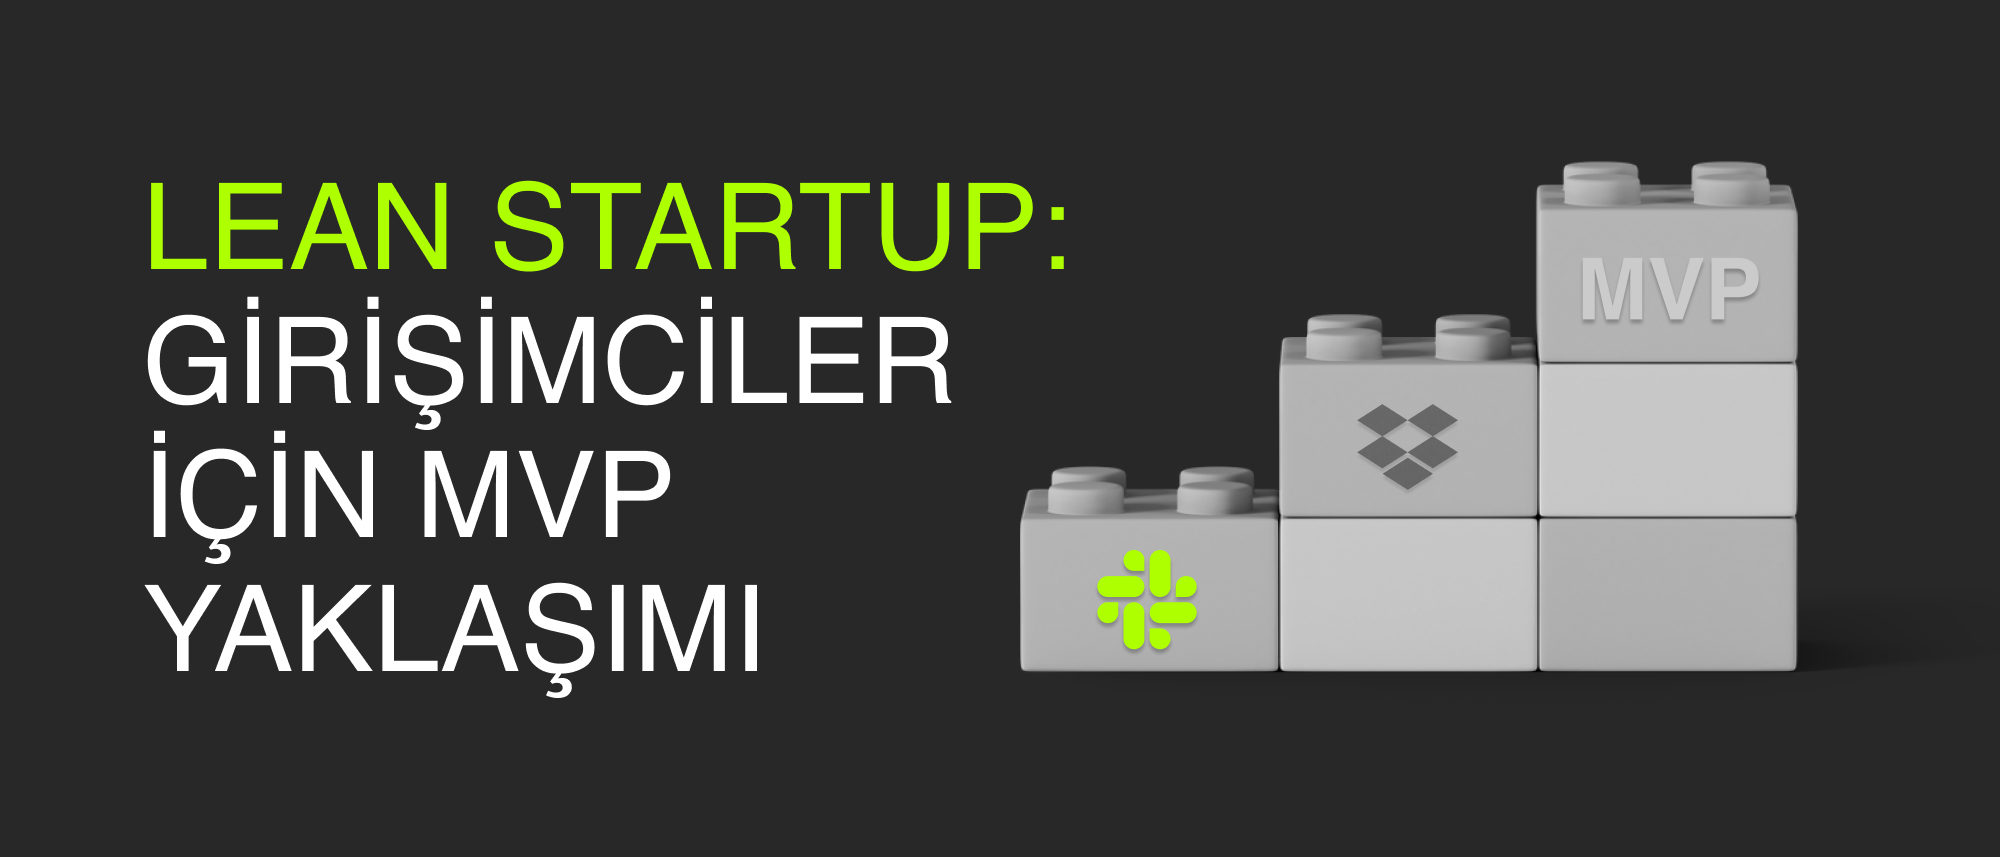 Lean Startup (Yalın Girişimcilik): Girişimciler için Minimum Viable Product (MVP) Yaklaşımı